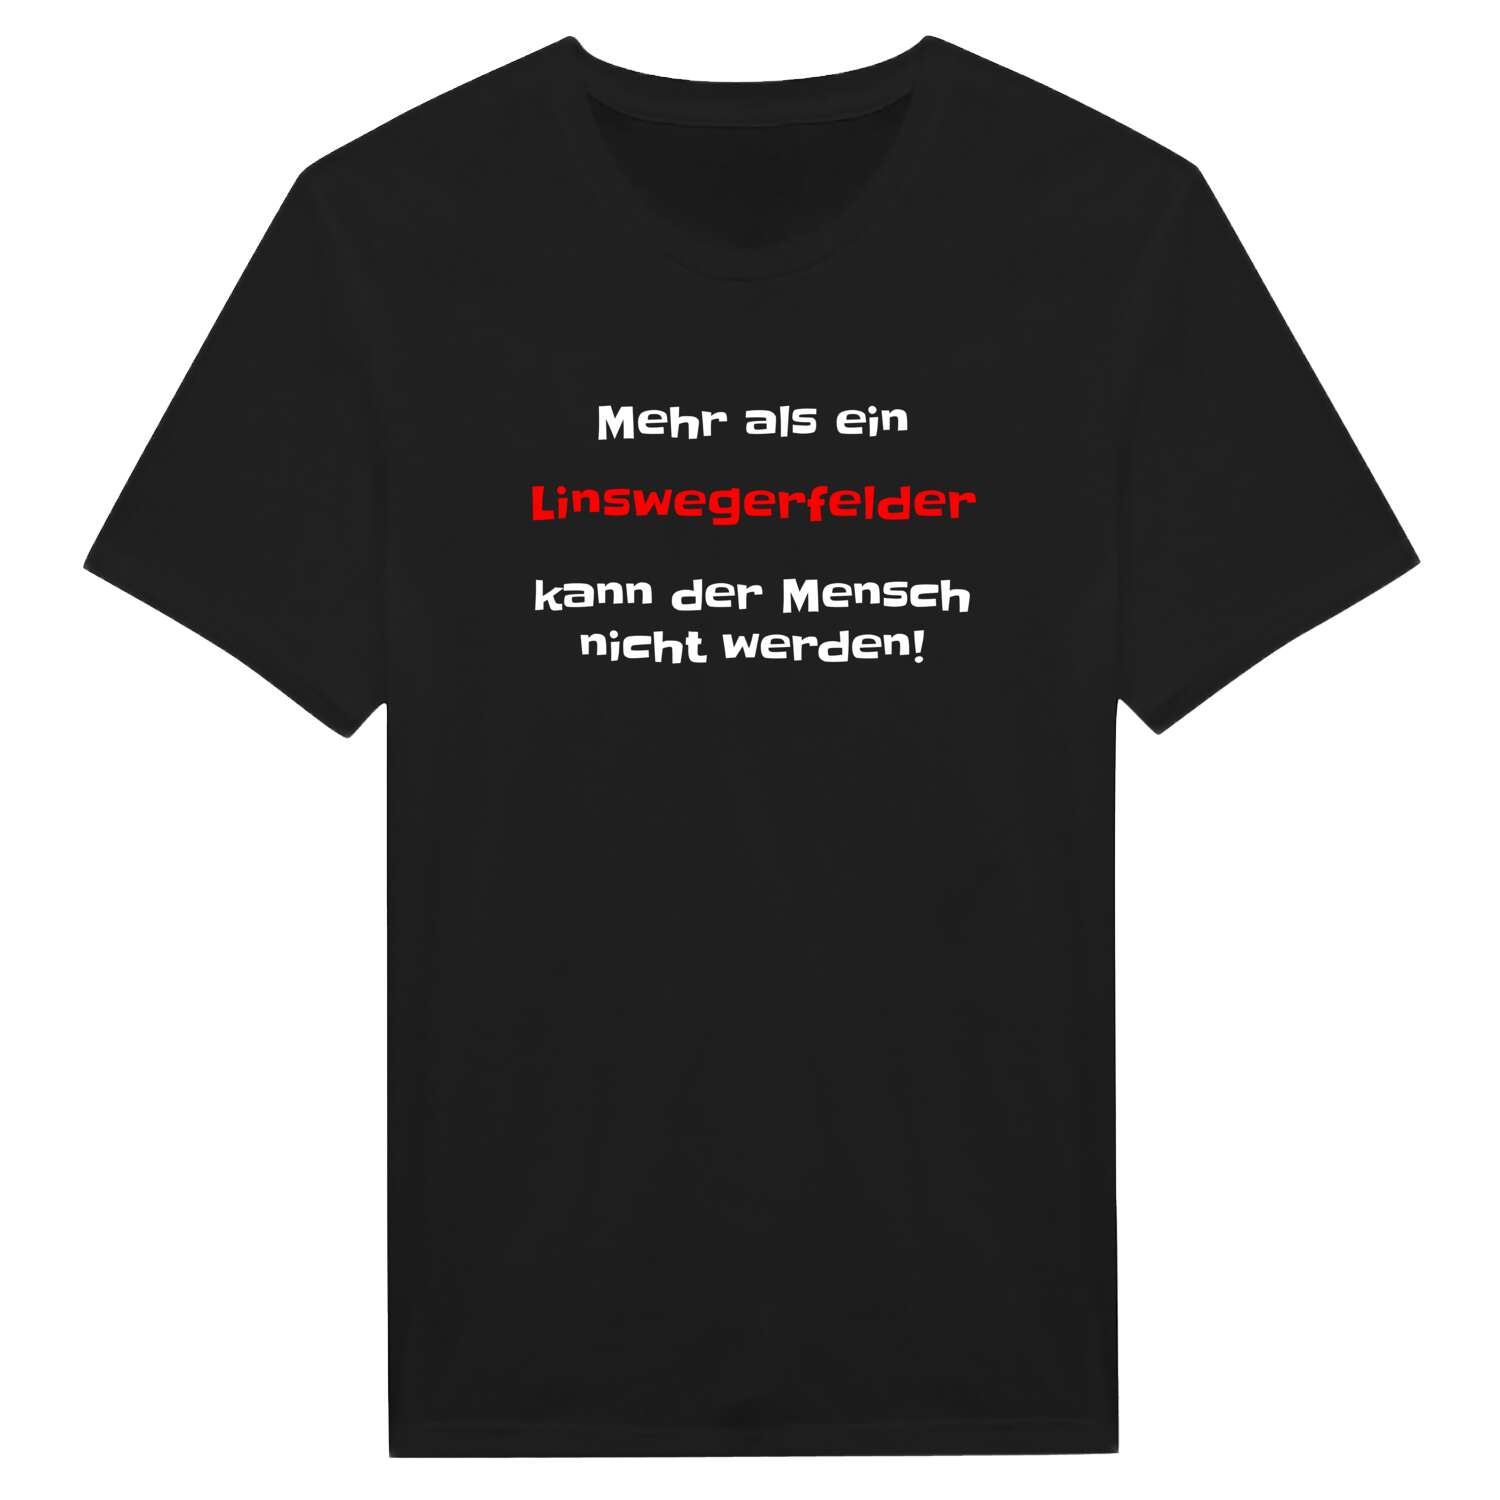 Linswegerfeld T-Shirt »Mehr als ein«